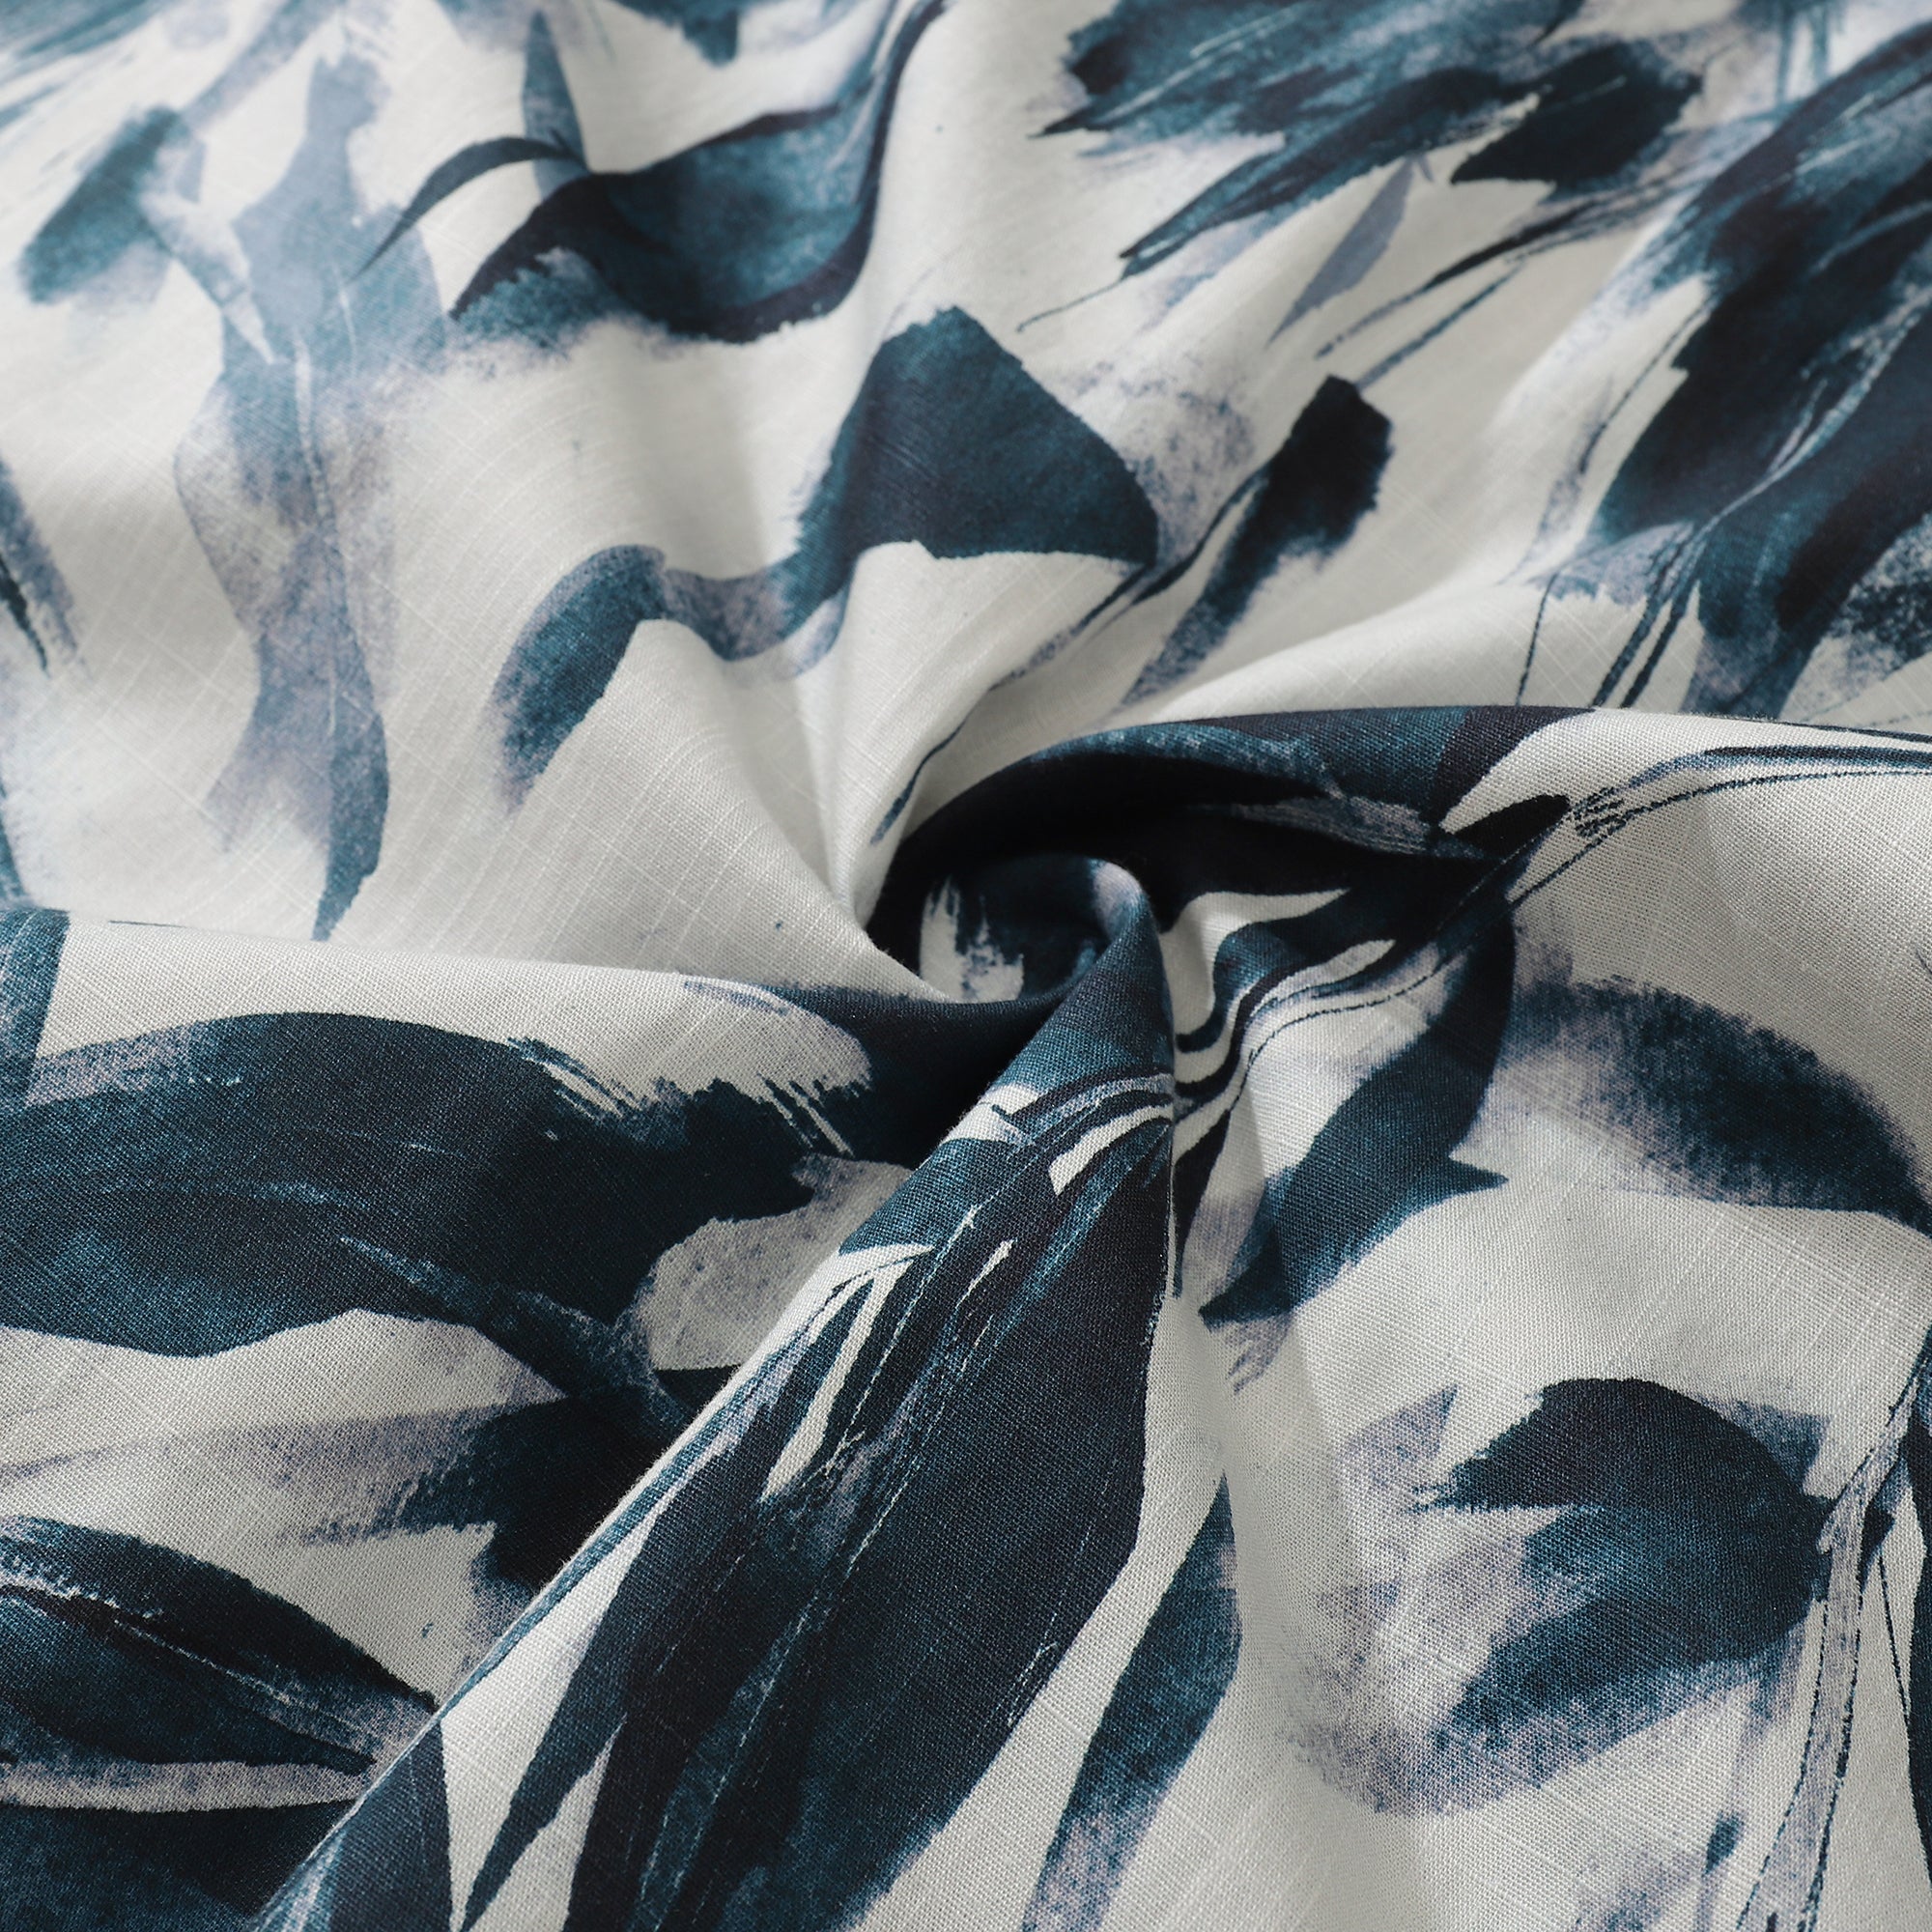 Camisa Aloha para hombre, camisa de campamento de manga corta de algodón con pintura de tinta y hojas de bambú